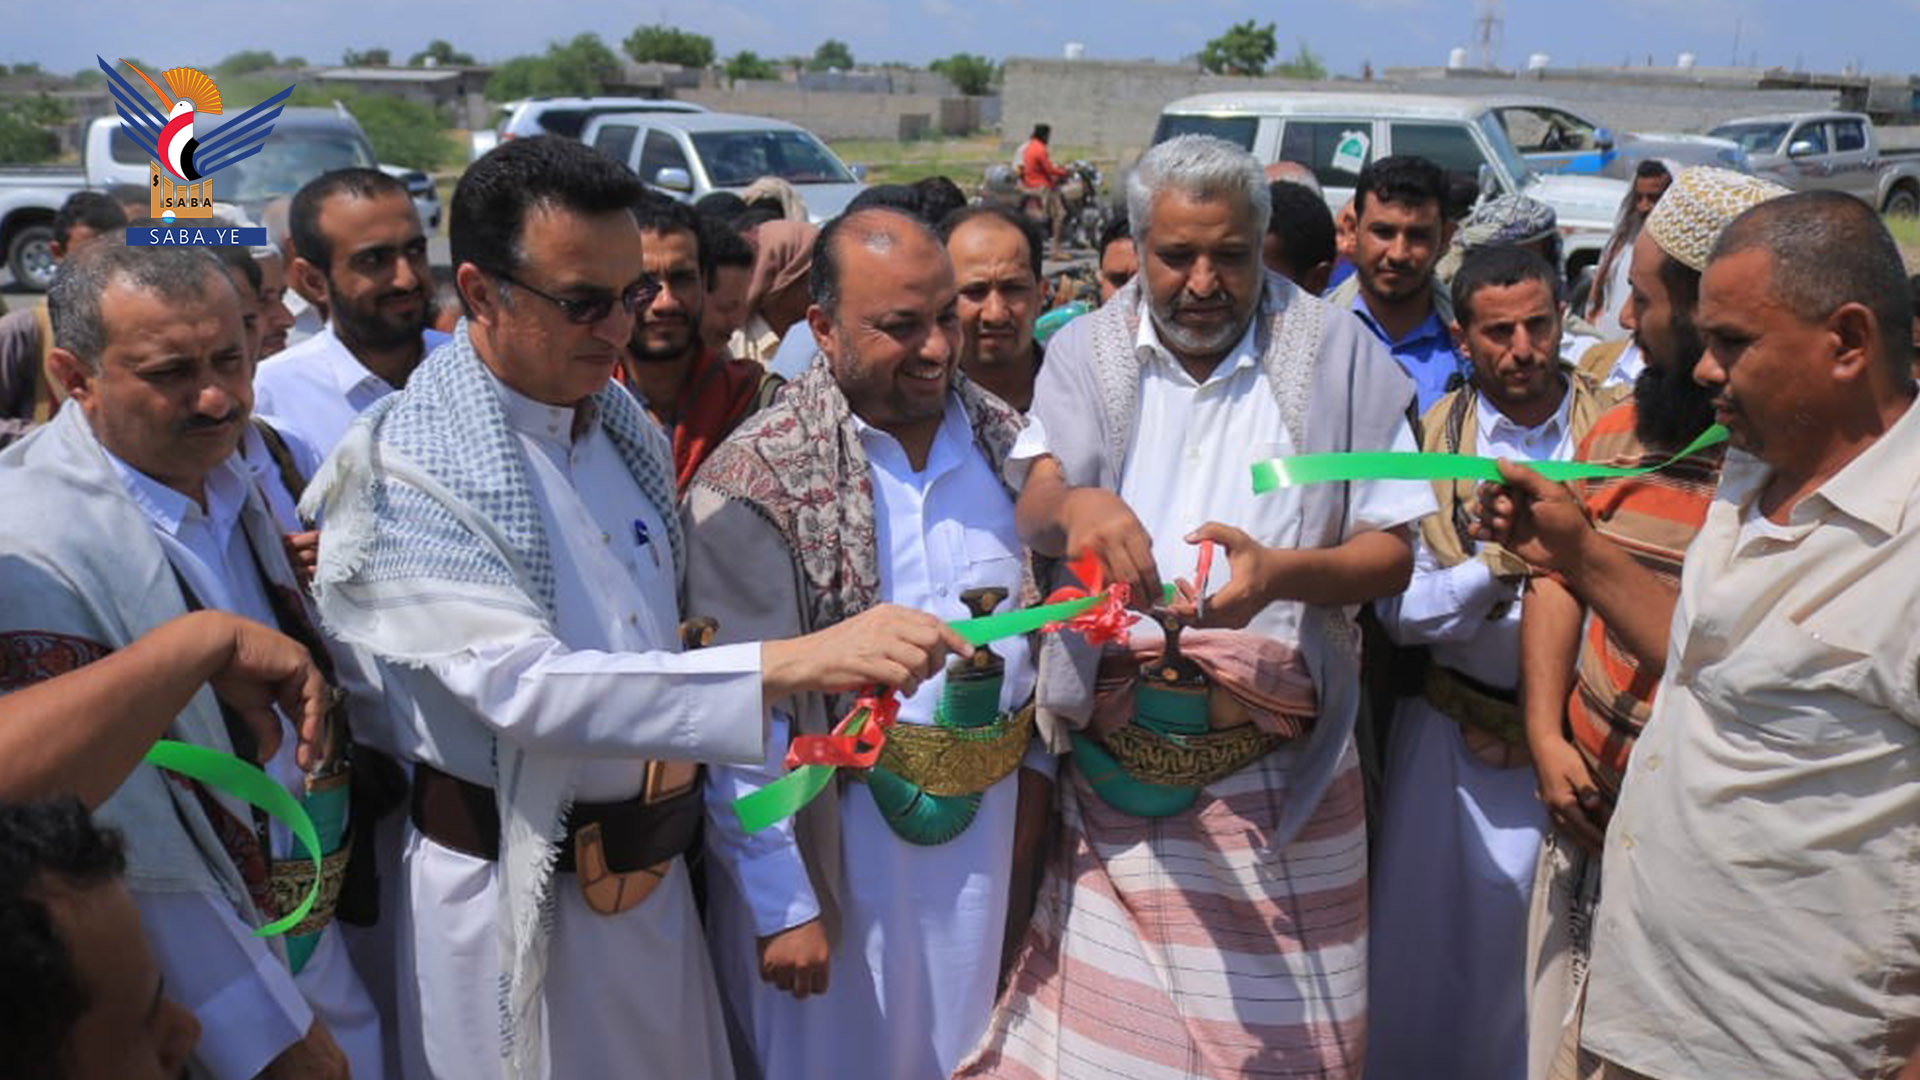 Einweihung der Wasserprojekte in Hodeidah mit 897 Millionen und 517.000 Rial ein